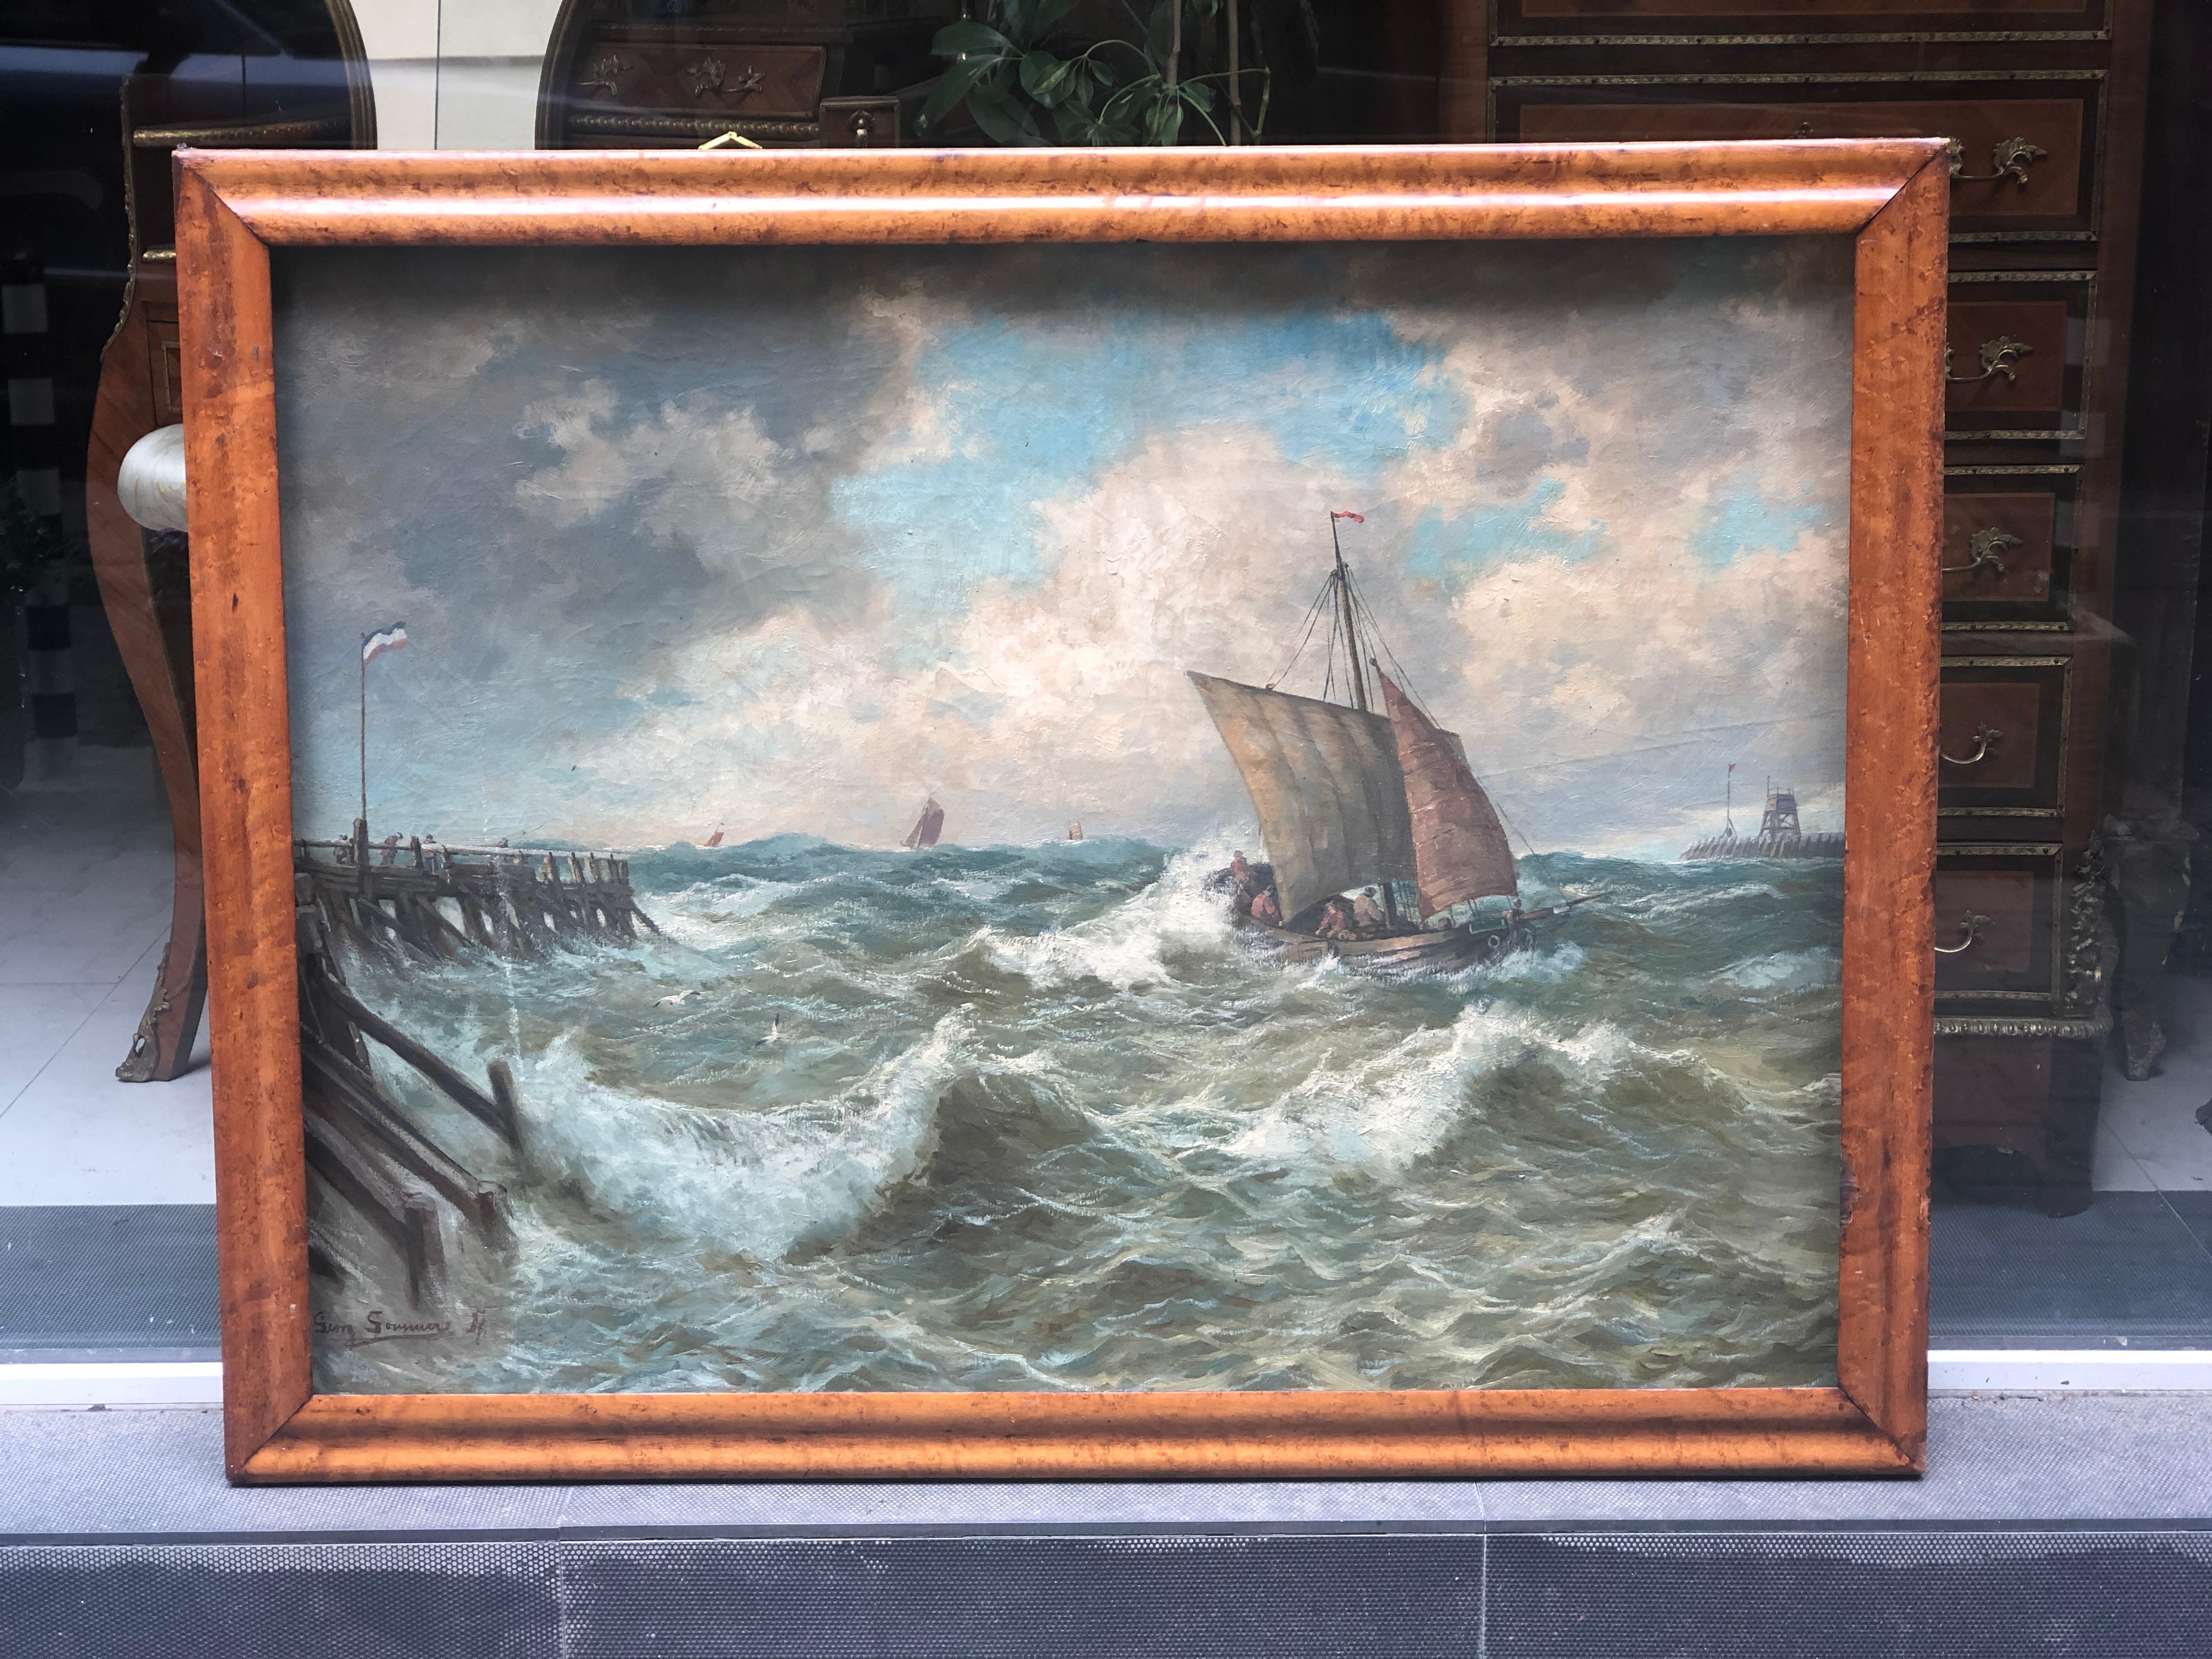 Tableau du peintre allemand Georg Sommer (1848-1917) - huile sur toile représentant un bateau proche du port mais toujours happé par les vagues déchaînées...
Cadre en palissandre.
Allemagne, vers 1890